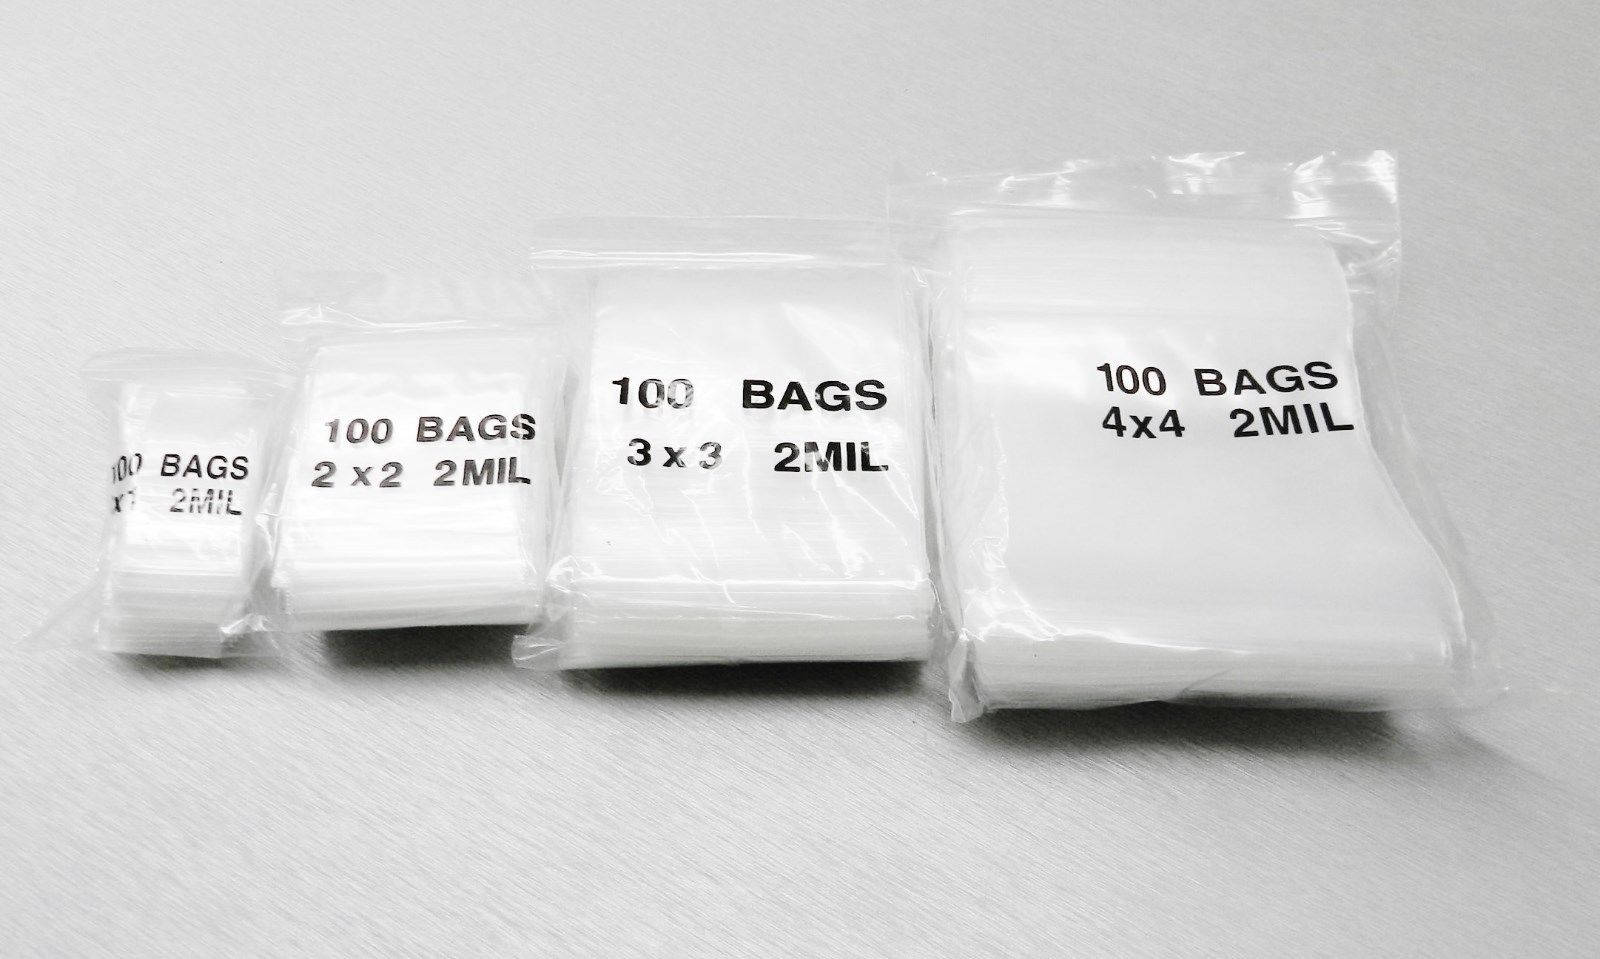 400 Zip Seal Top Squeeze Lock Bags Assortment of Popular 2x2 2x3